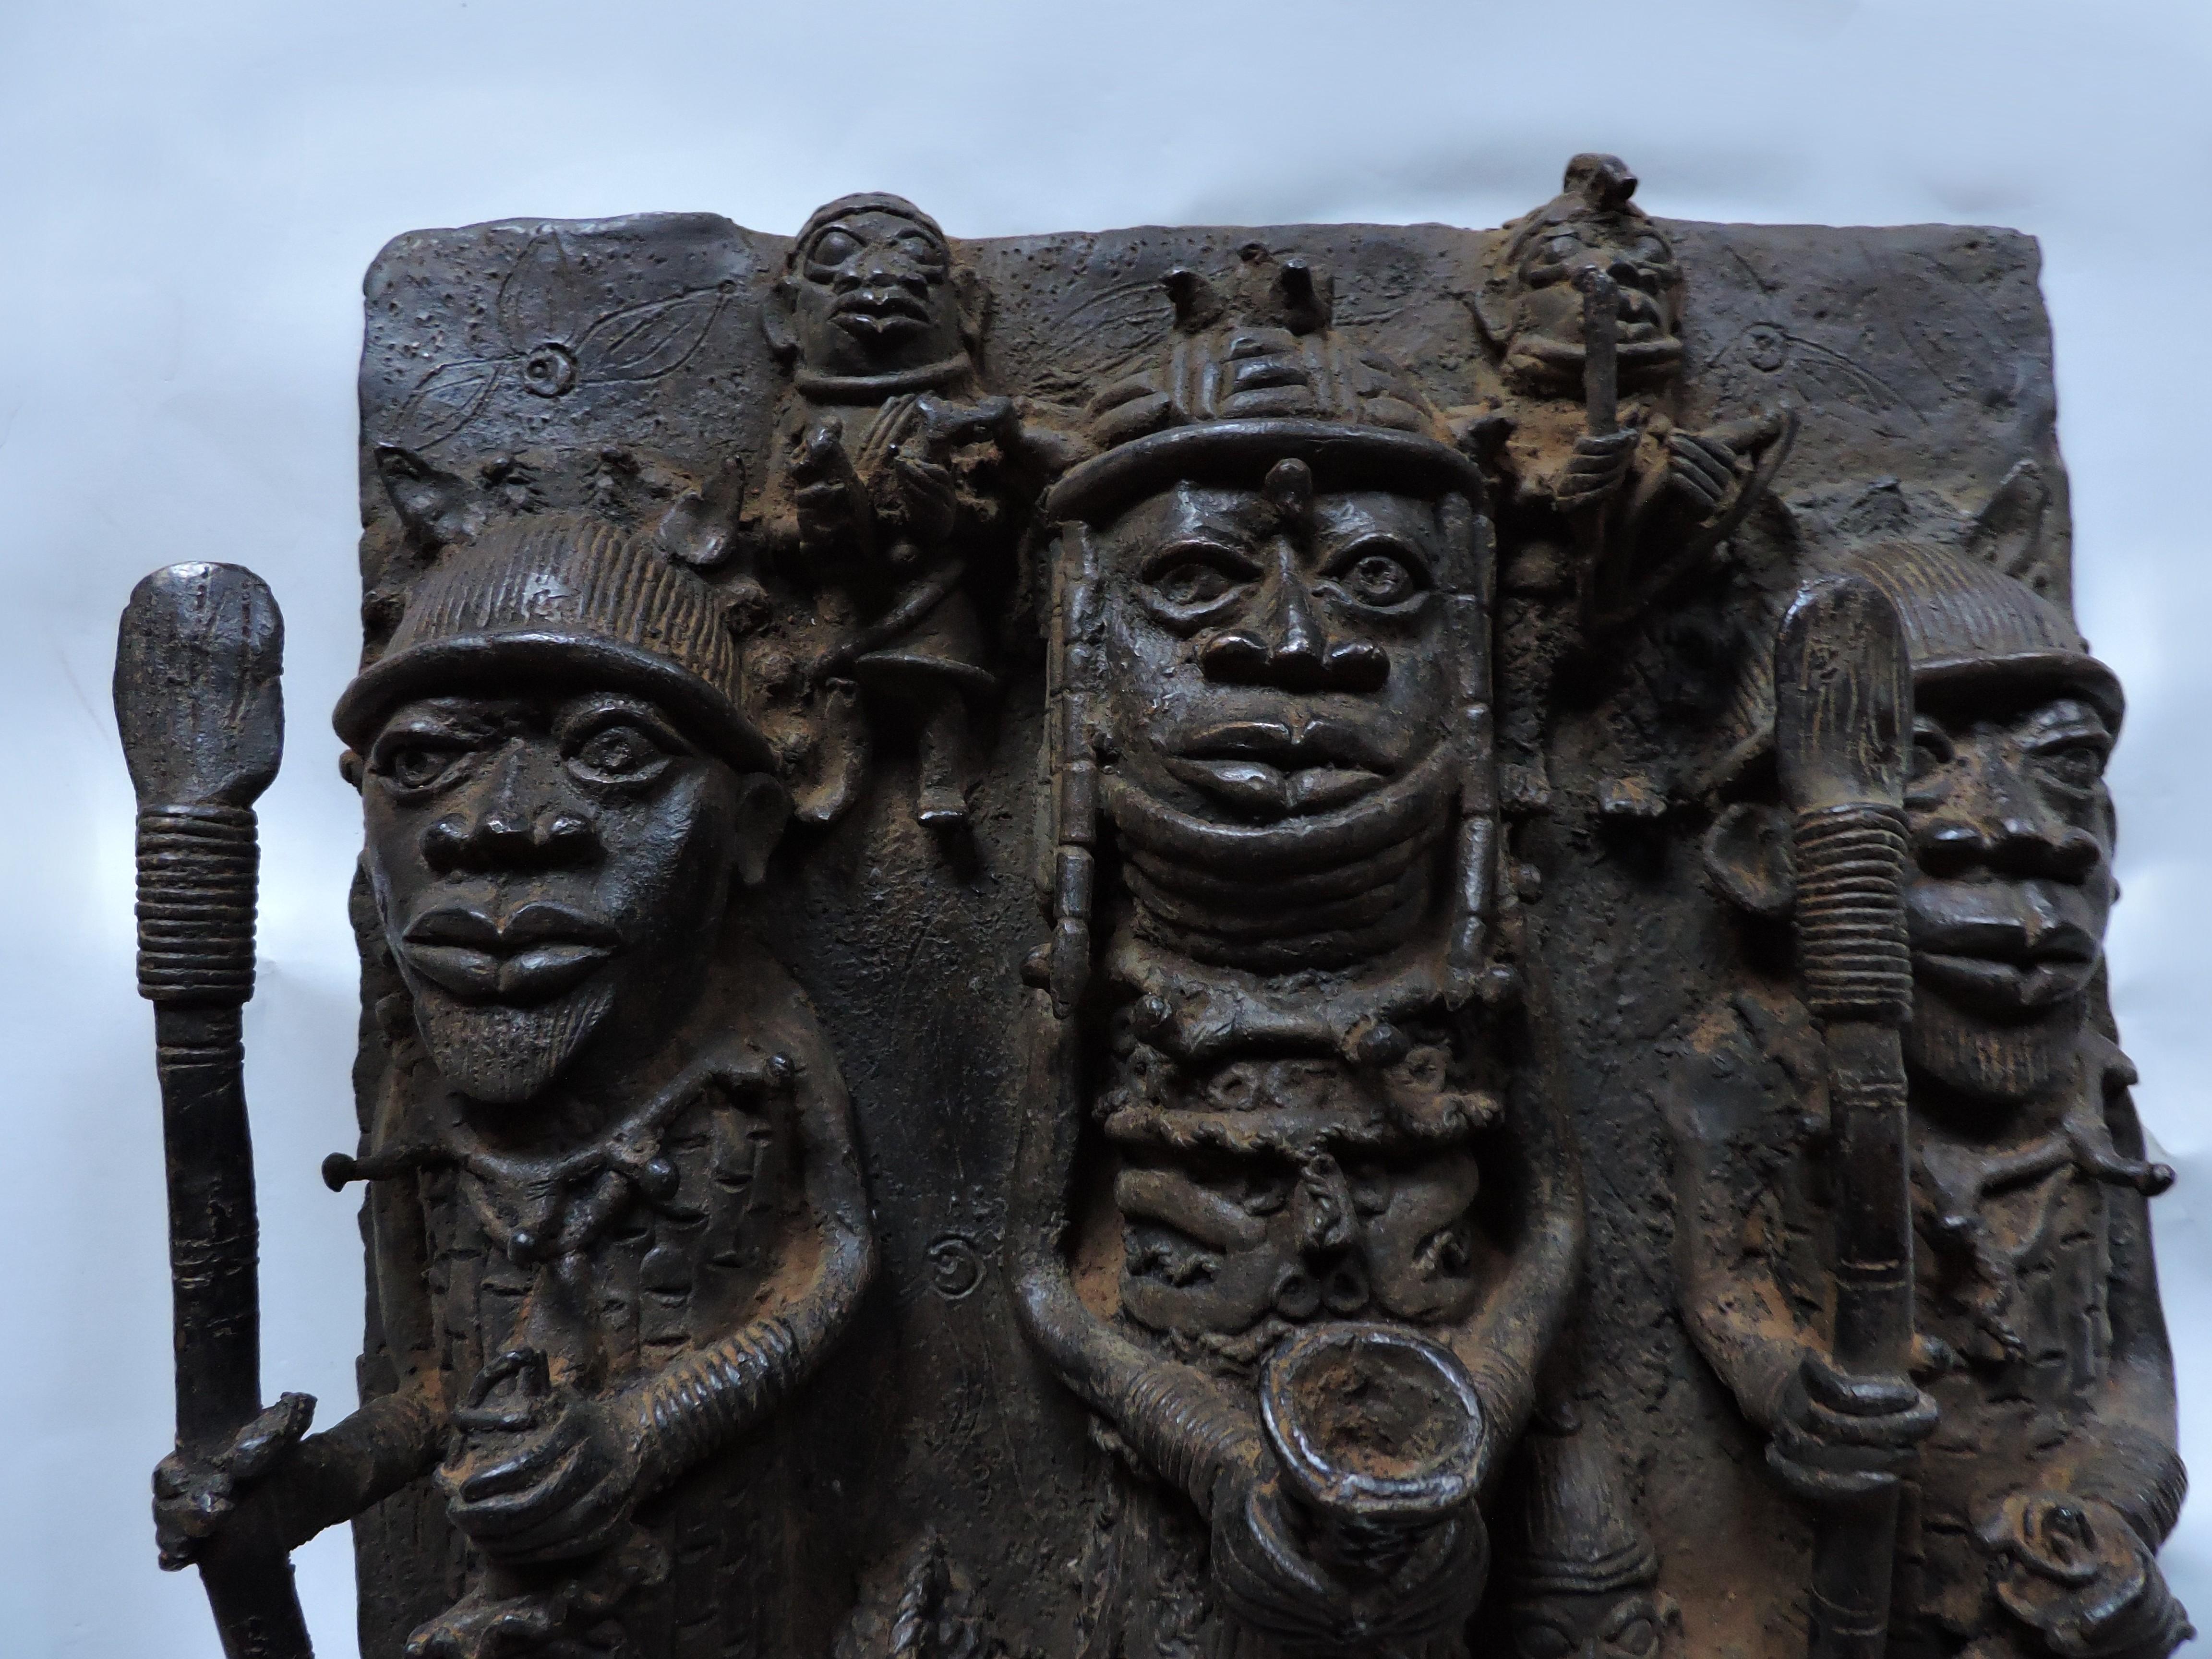 Sculpture en bronze en relief, étonnante et détaillée, provenant du Bénin, aujourd'hui connu sous le nom de Nigeria, en Afrique. Cette pièce a été modelée d'après d'anciens bronzes du Bénin, mais elle date du 20e siècle. L'imagerie complexe a été